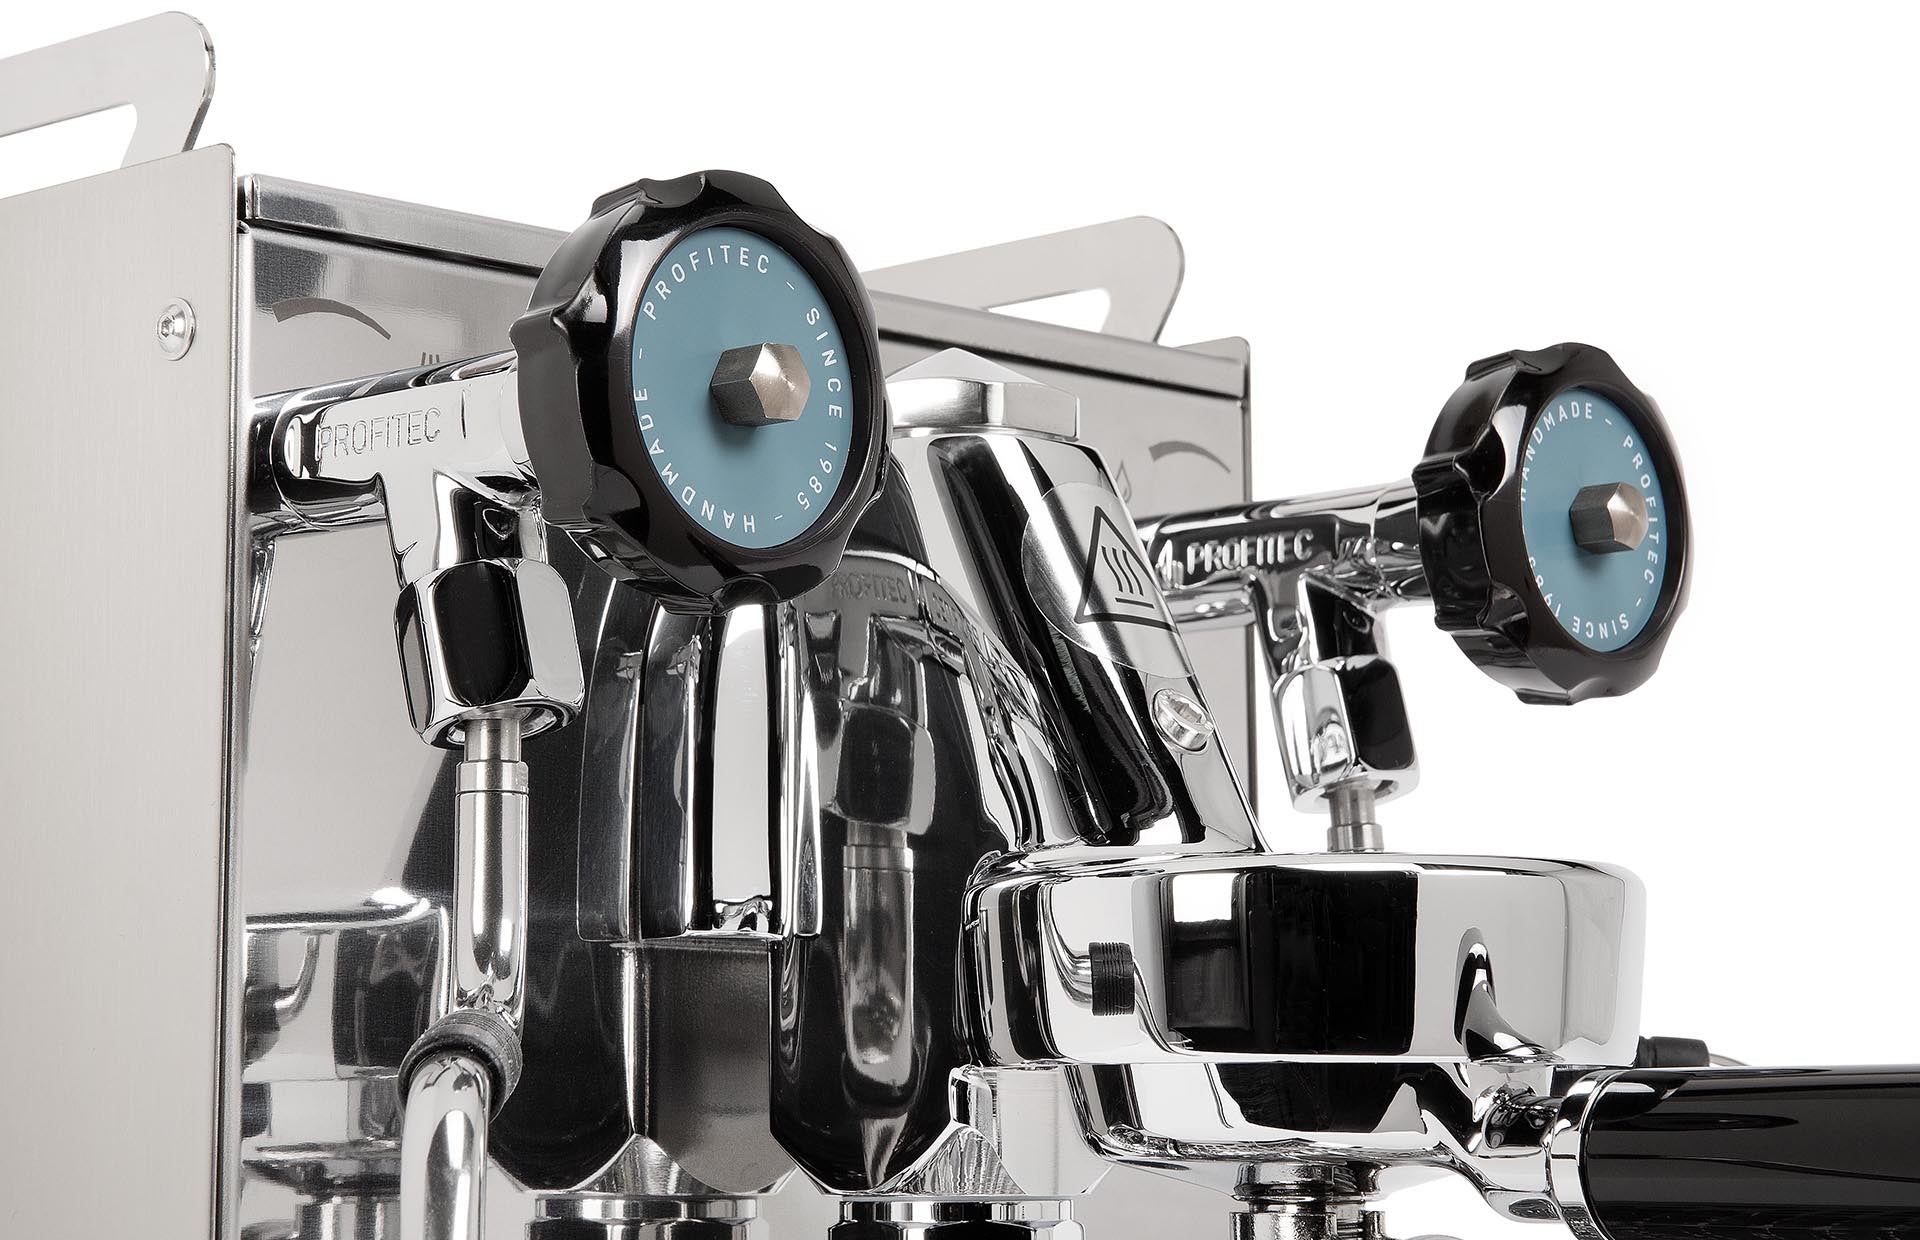 Profitec Pro 400 - Machine Espresso